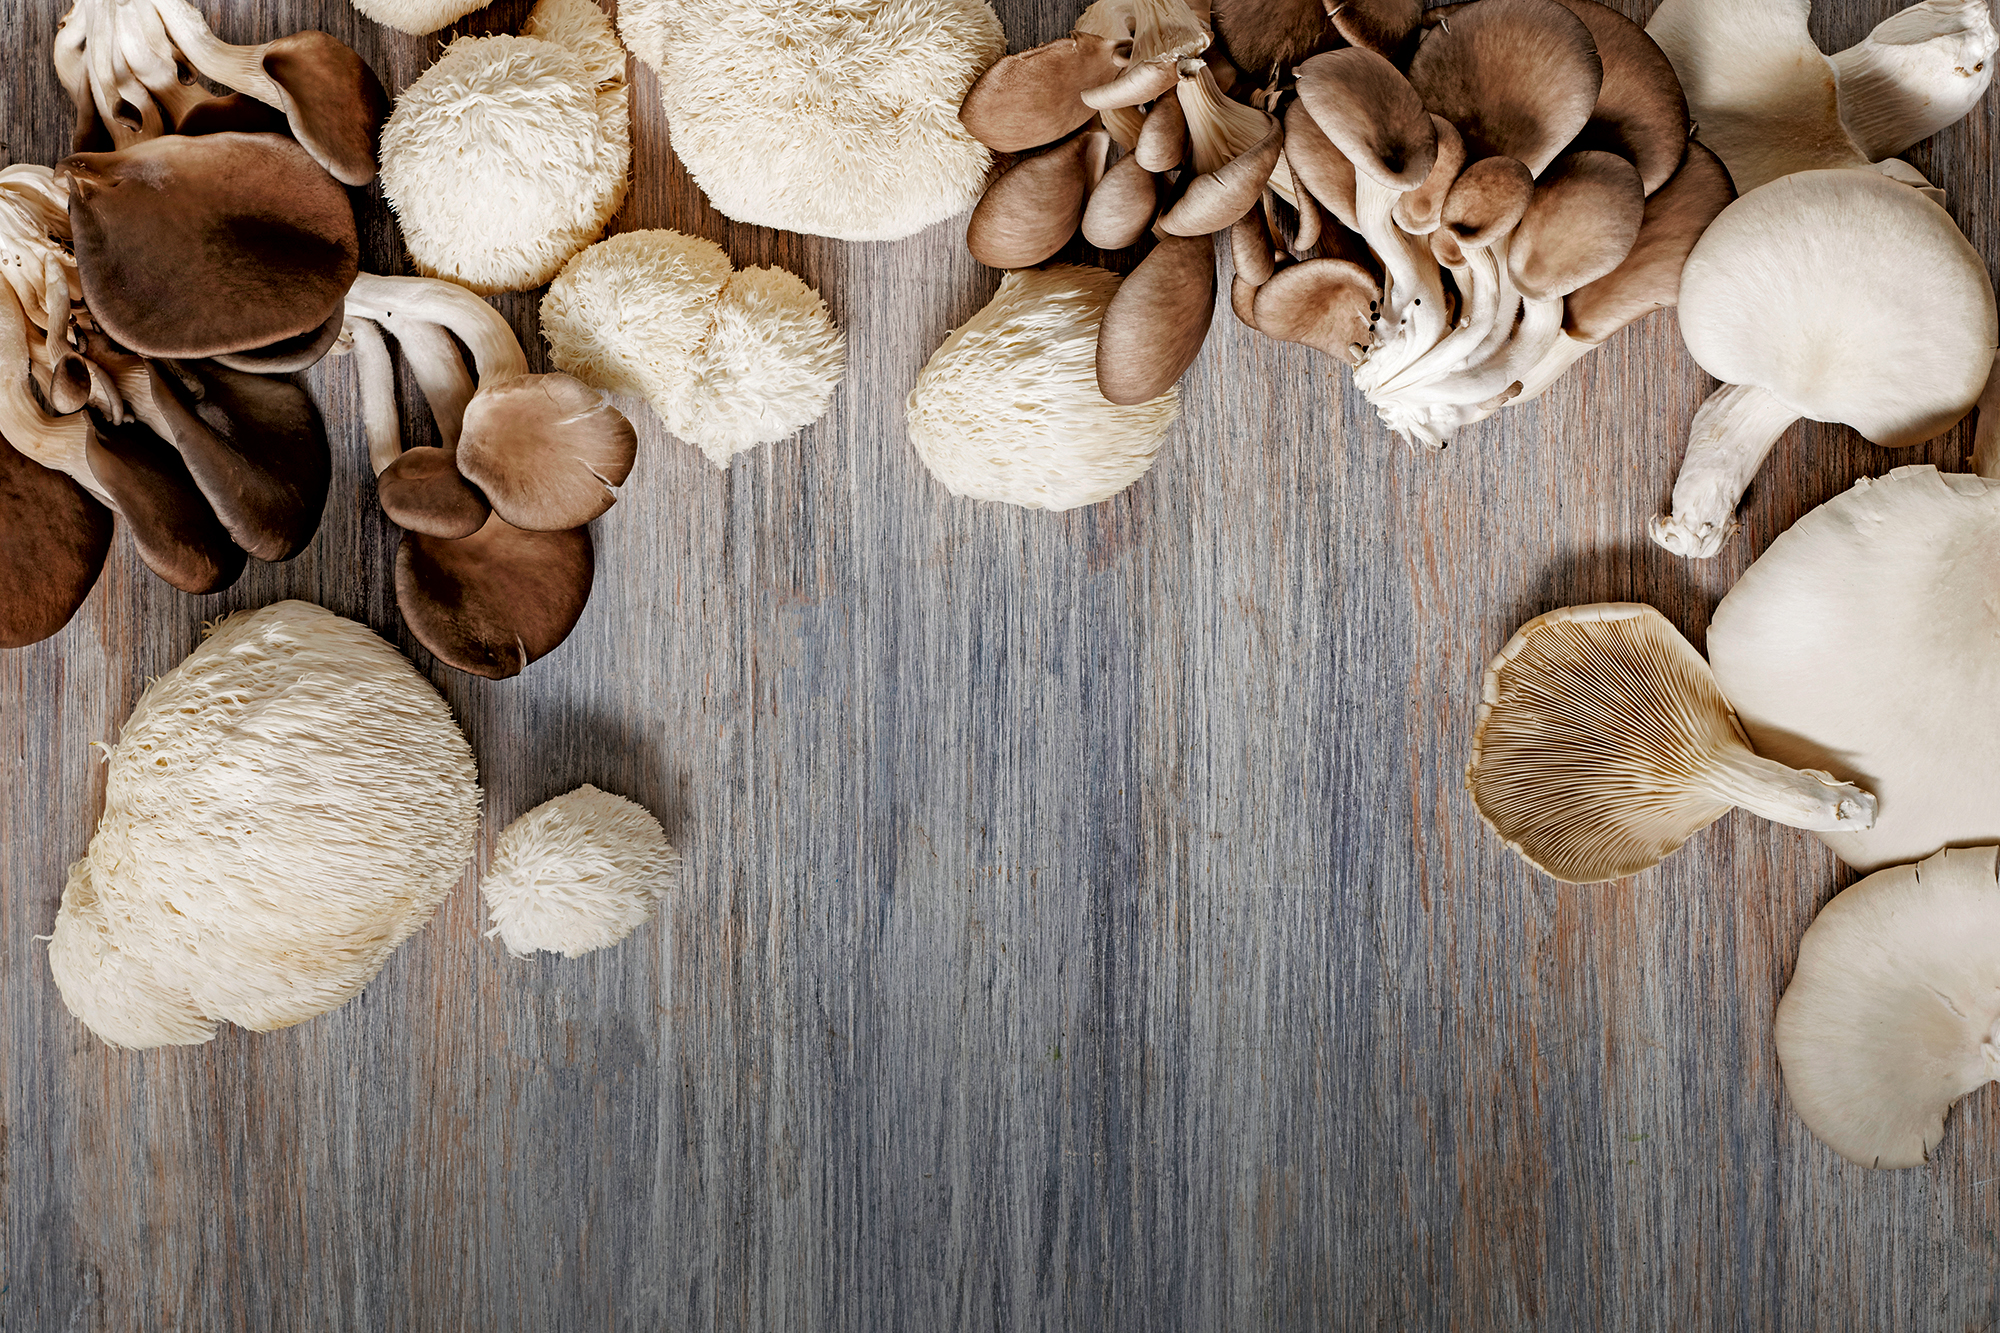 Sienistä umamia ja uusia muotoja ruokalistalle — HoReCa-tukku Kespro